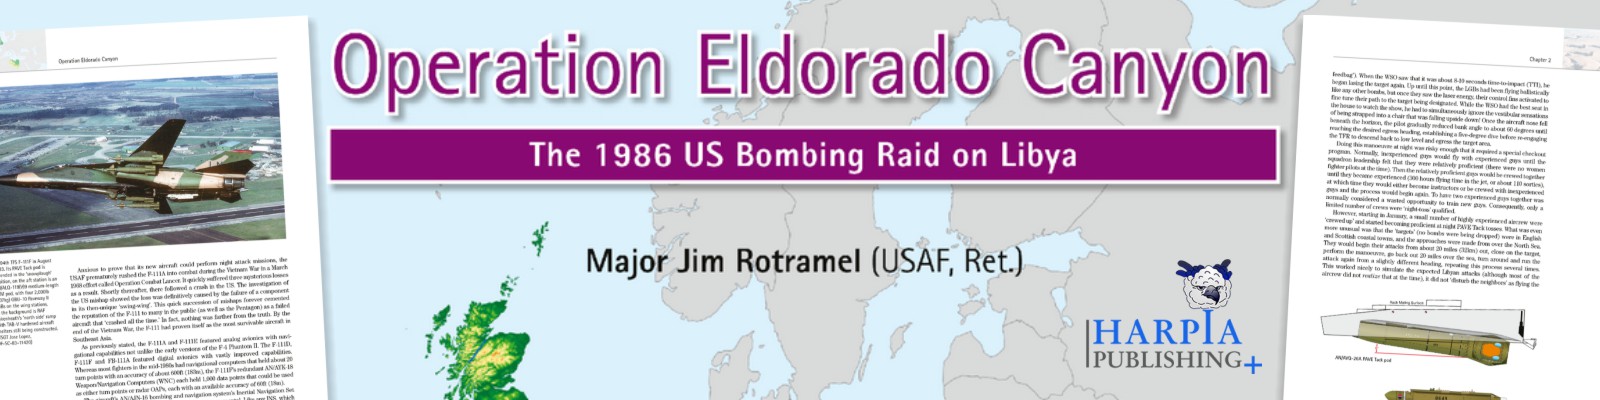 Harpia Publishing | Operation Eldorado Canyon: The 1986 US Bombing Raid on Libya